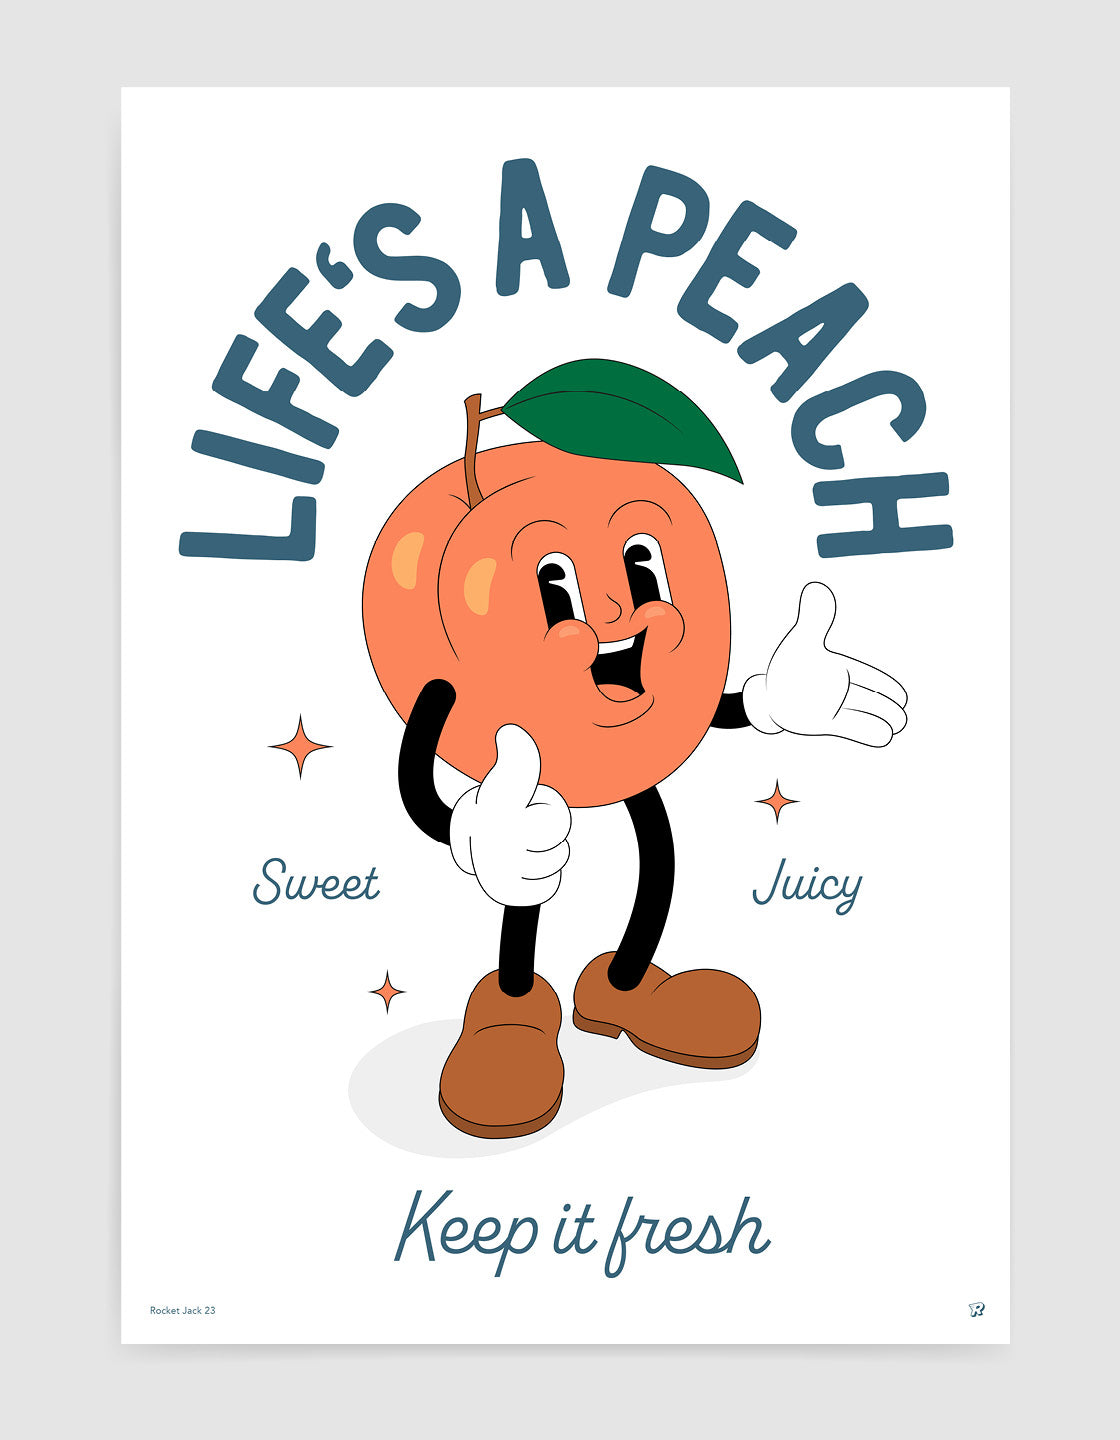 Life's a peach